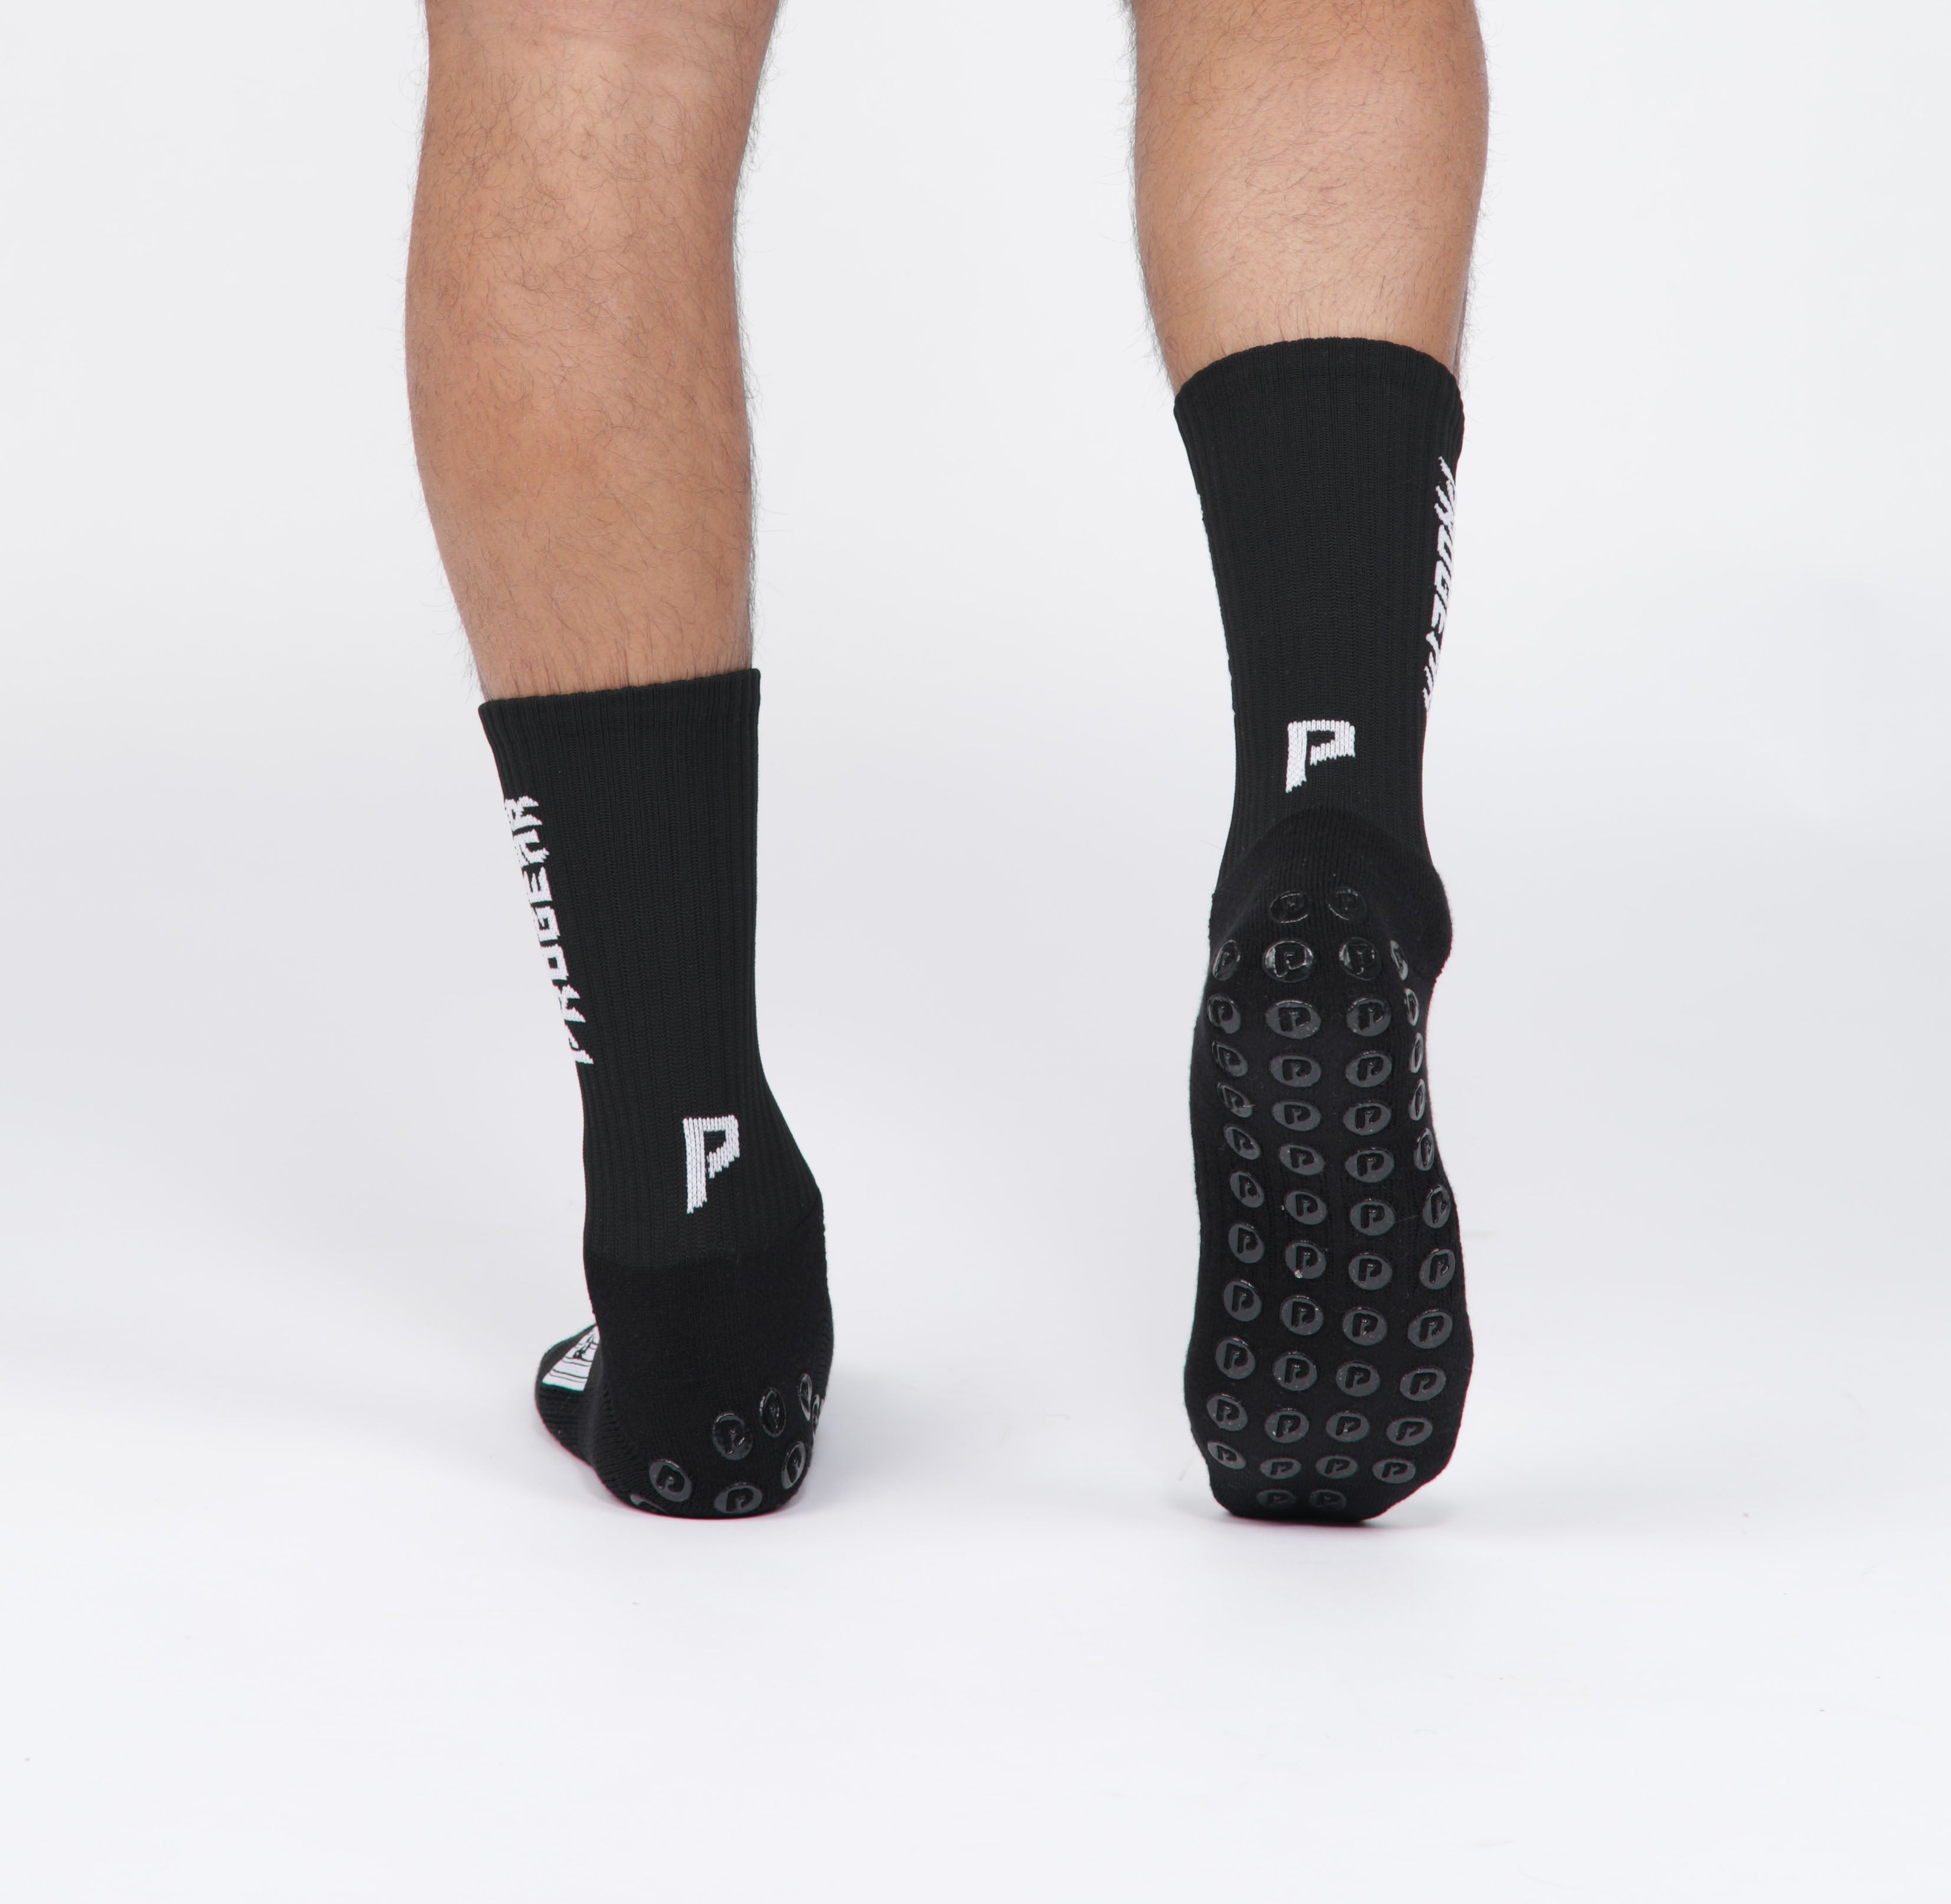 P-TEX PRO Knit Compression Socks